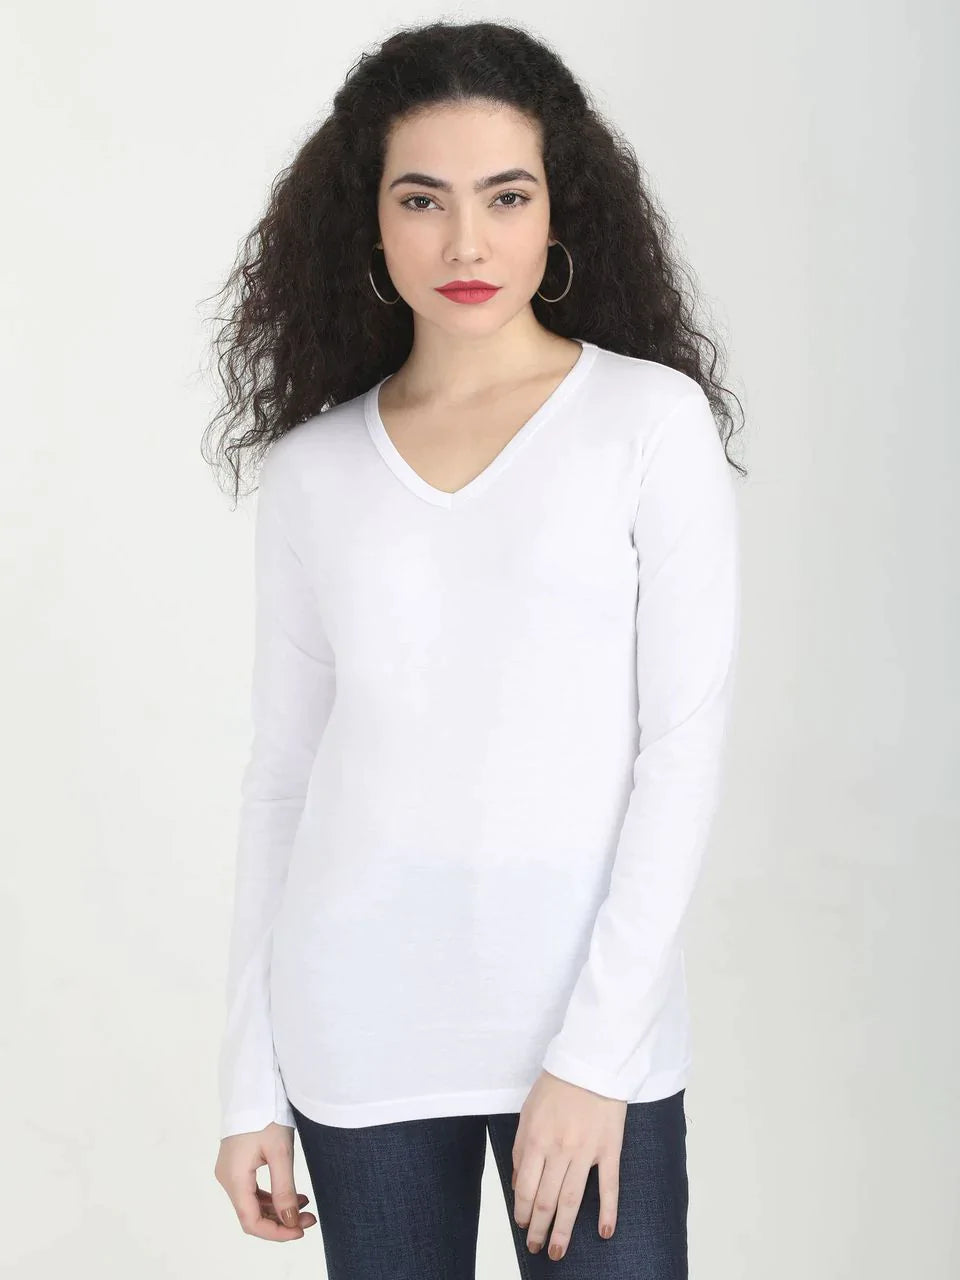 Fleximaa Women's Cotton Plain V Neck Full Sleeve T-Shirt (Pack of 2) - Fleximaa